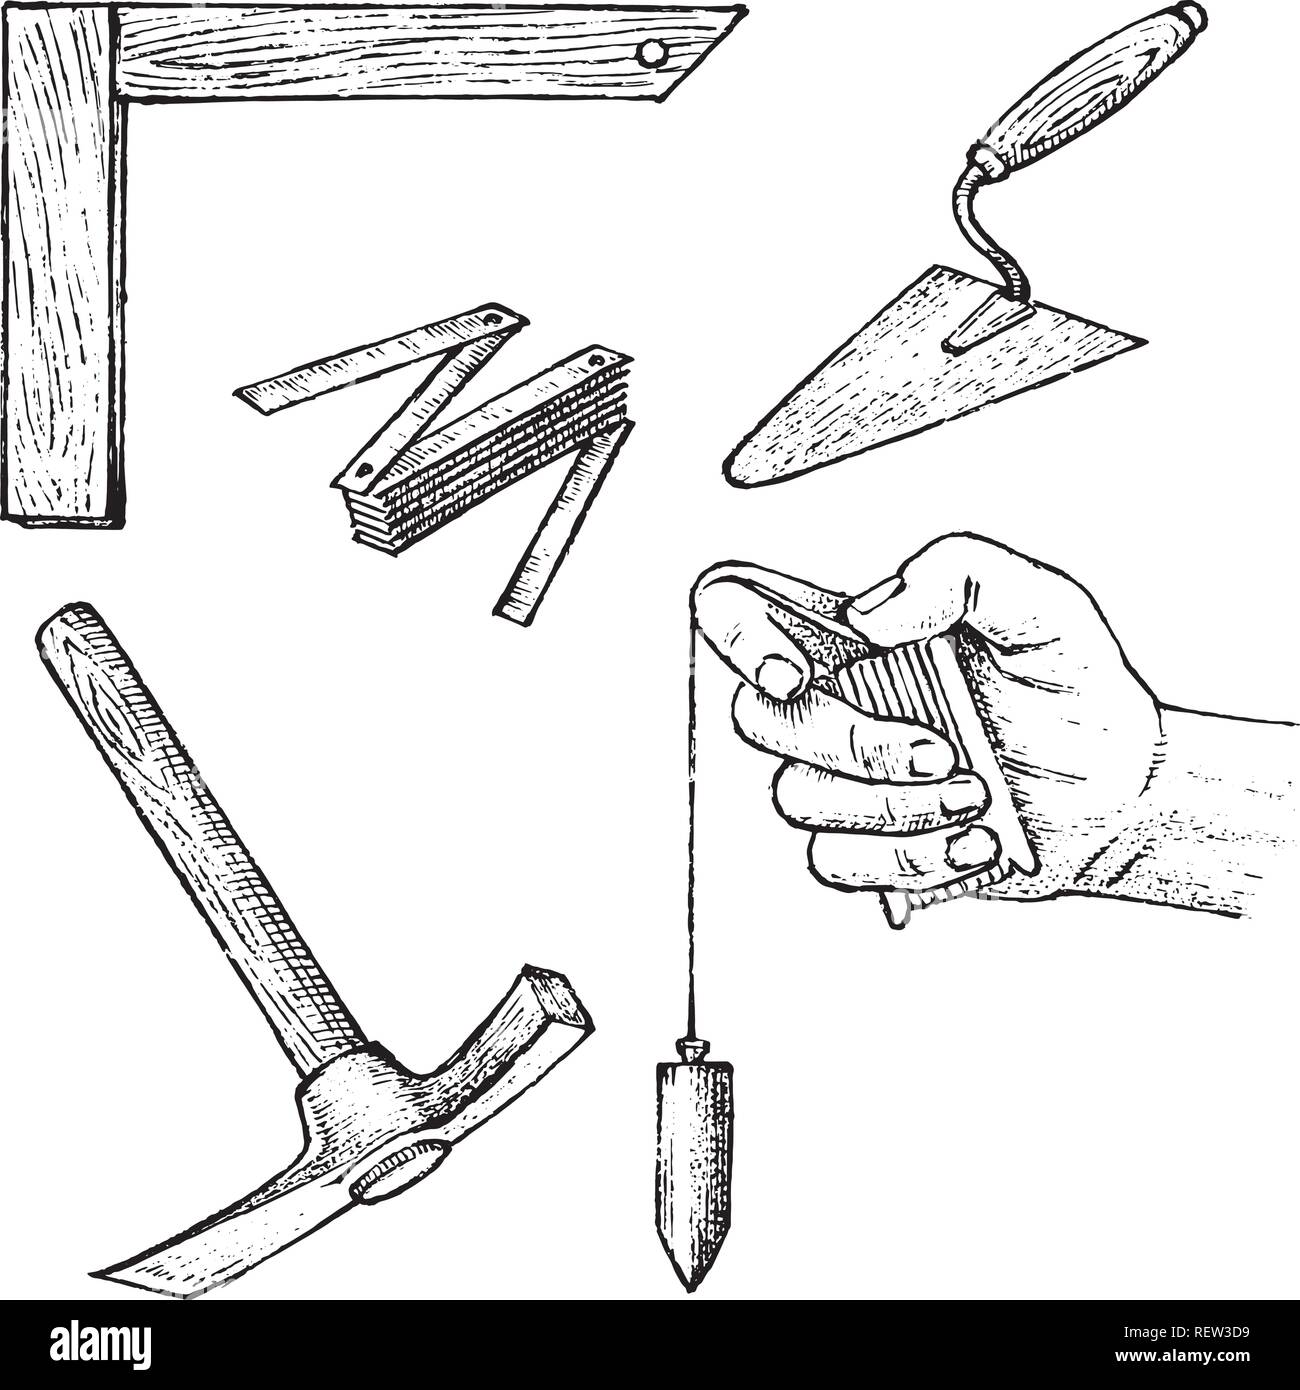 Werkzeuge für Bau und Reparatur von Gebäuden. Spachtel, Hammer, Messgeräte. Hand graviert vintage Skizze gezeichnet. Stock Vektor